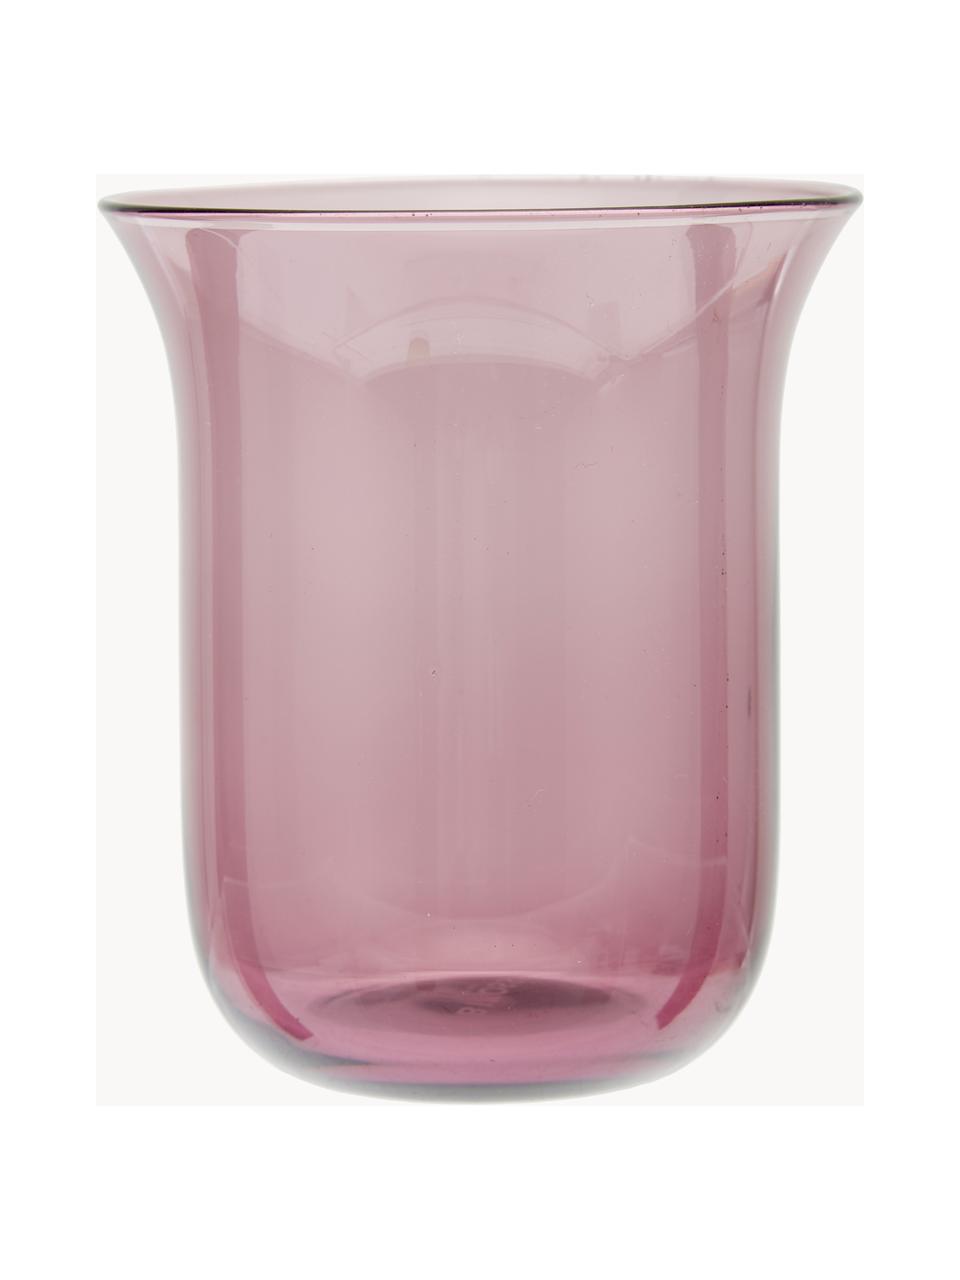 Komplet szklanek ze szkła dmuchanego Desigual, 6 elem., Szkło dmuchane, Wielobarwny, transparentny, Ø 8 x W 10 cm, 200 ml